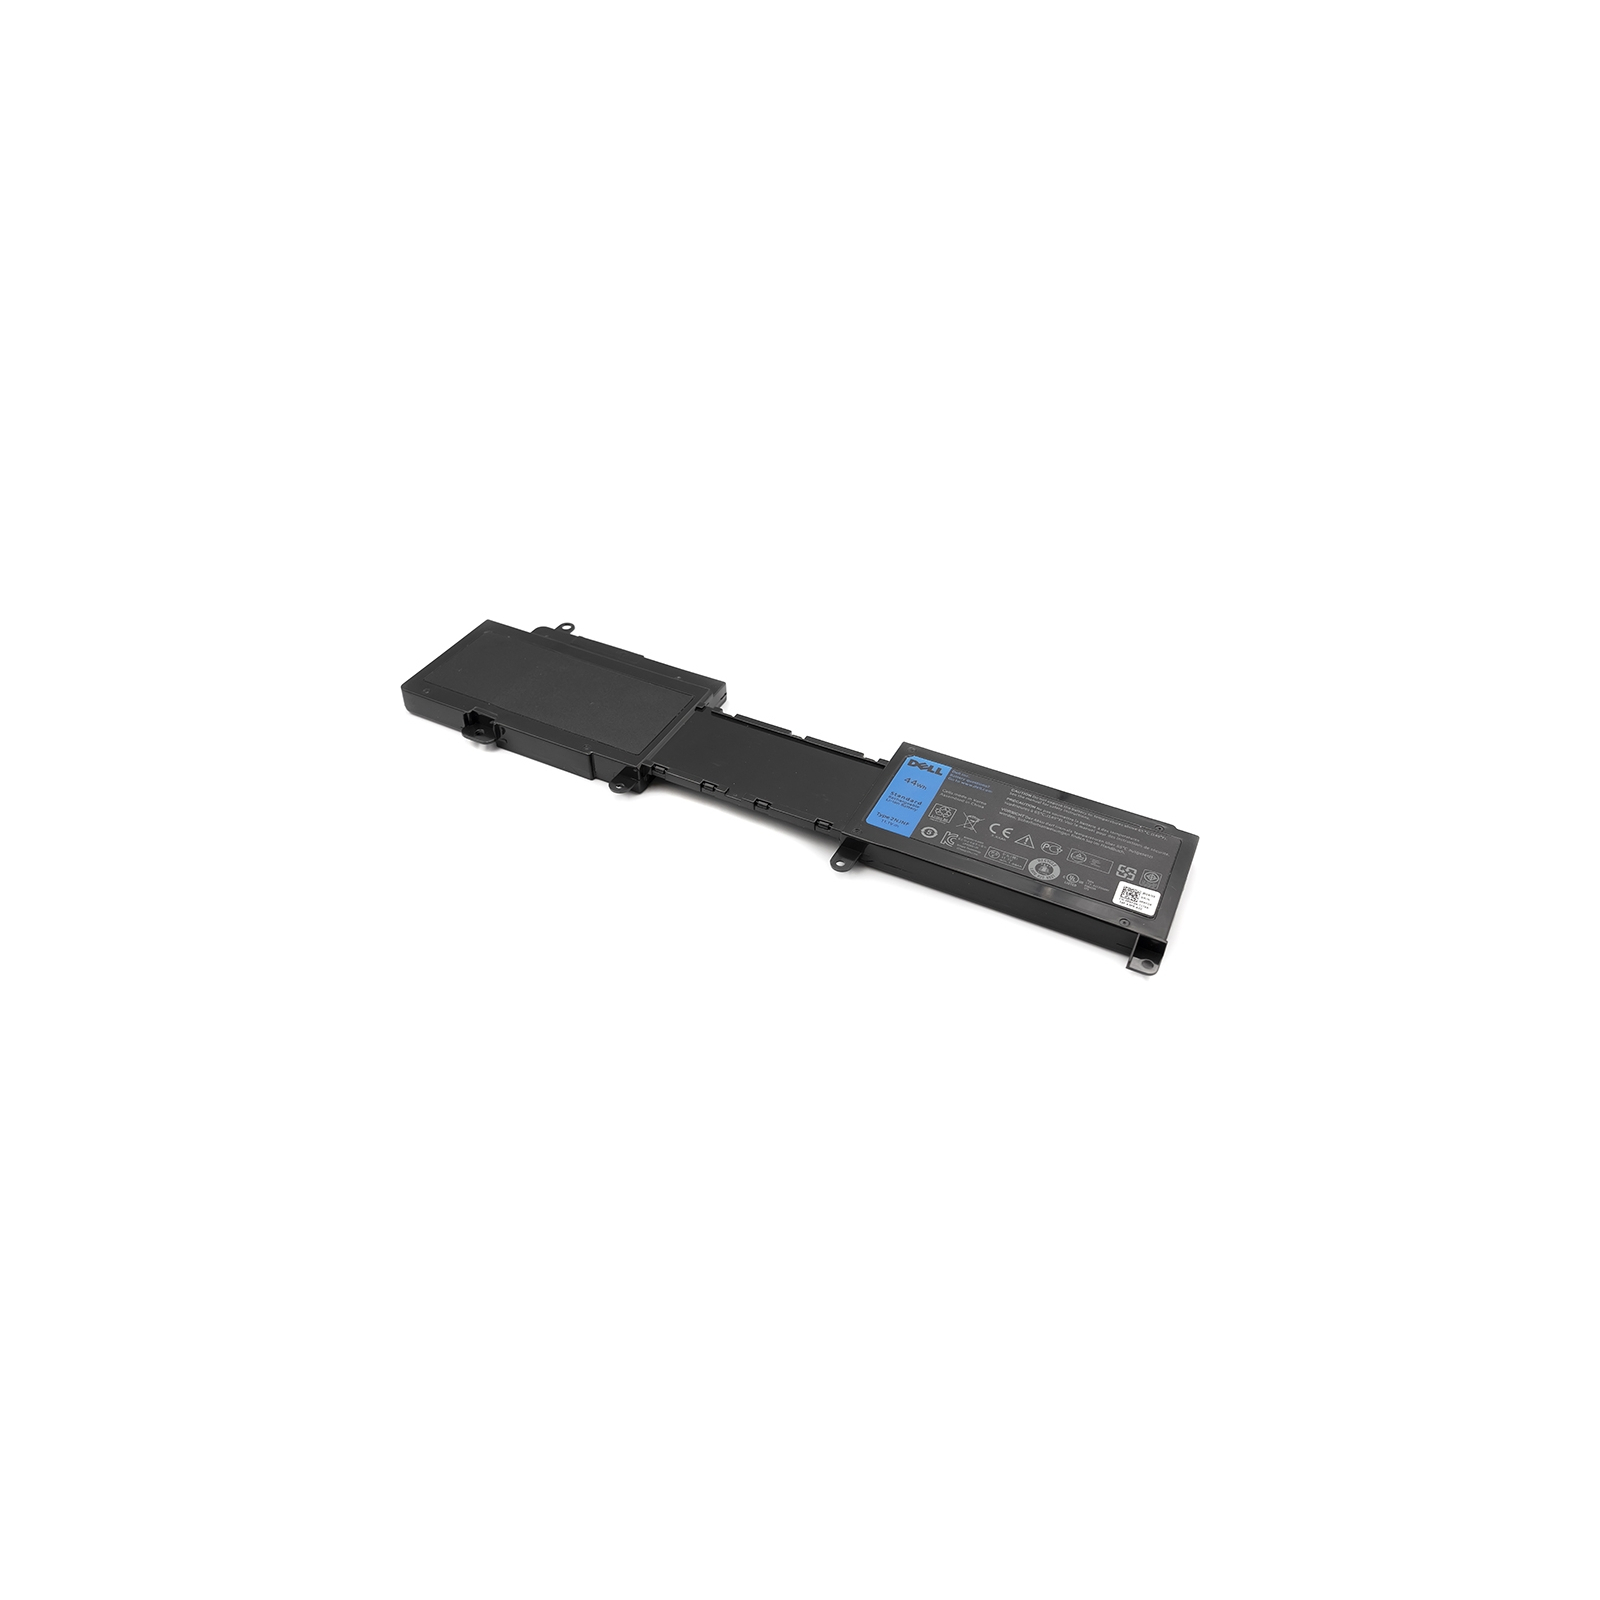 Аккумулятор для ноутбука Dell Inspiron 14z (5423) 11.1V 44Wh (NB440702)